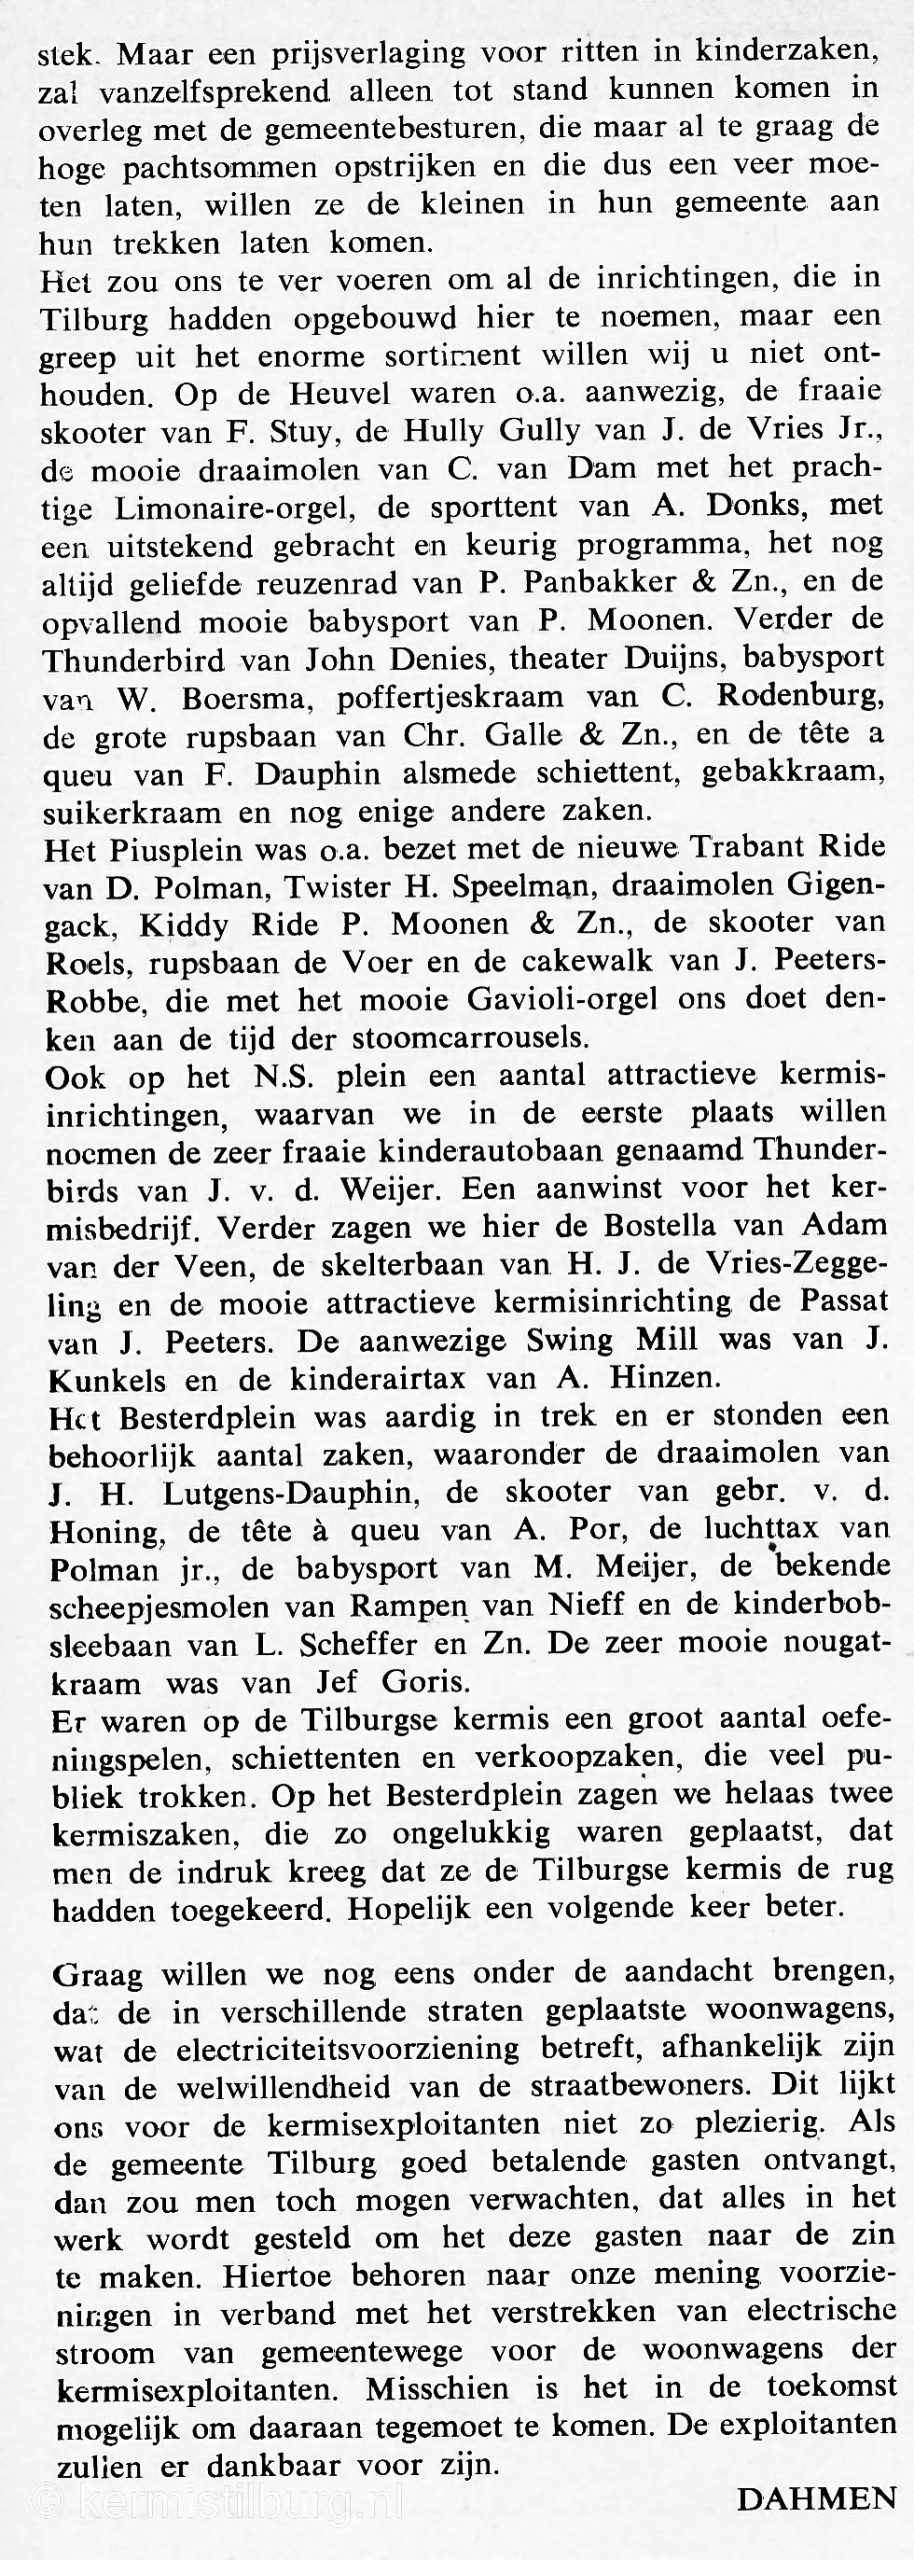 1968, Kermis, Tilburg, Tilburgse kermis, skc